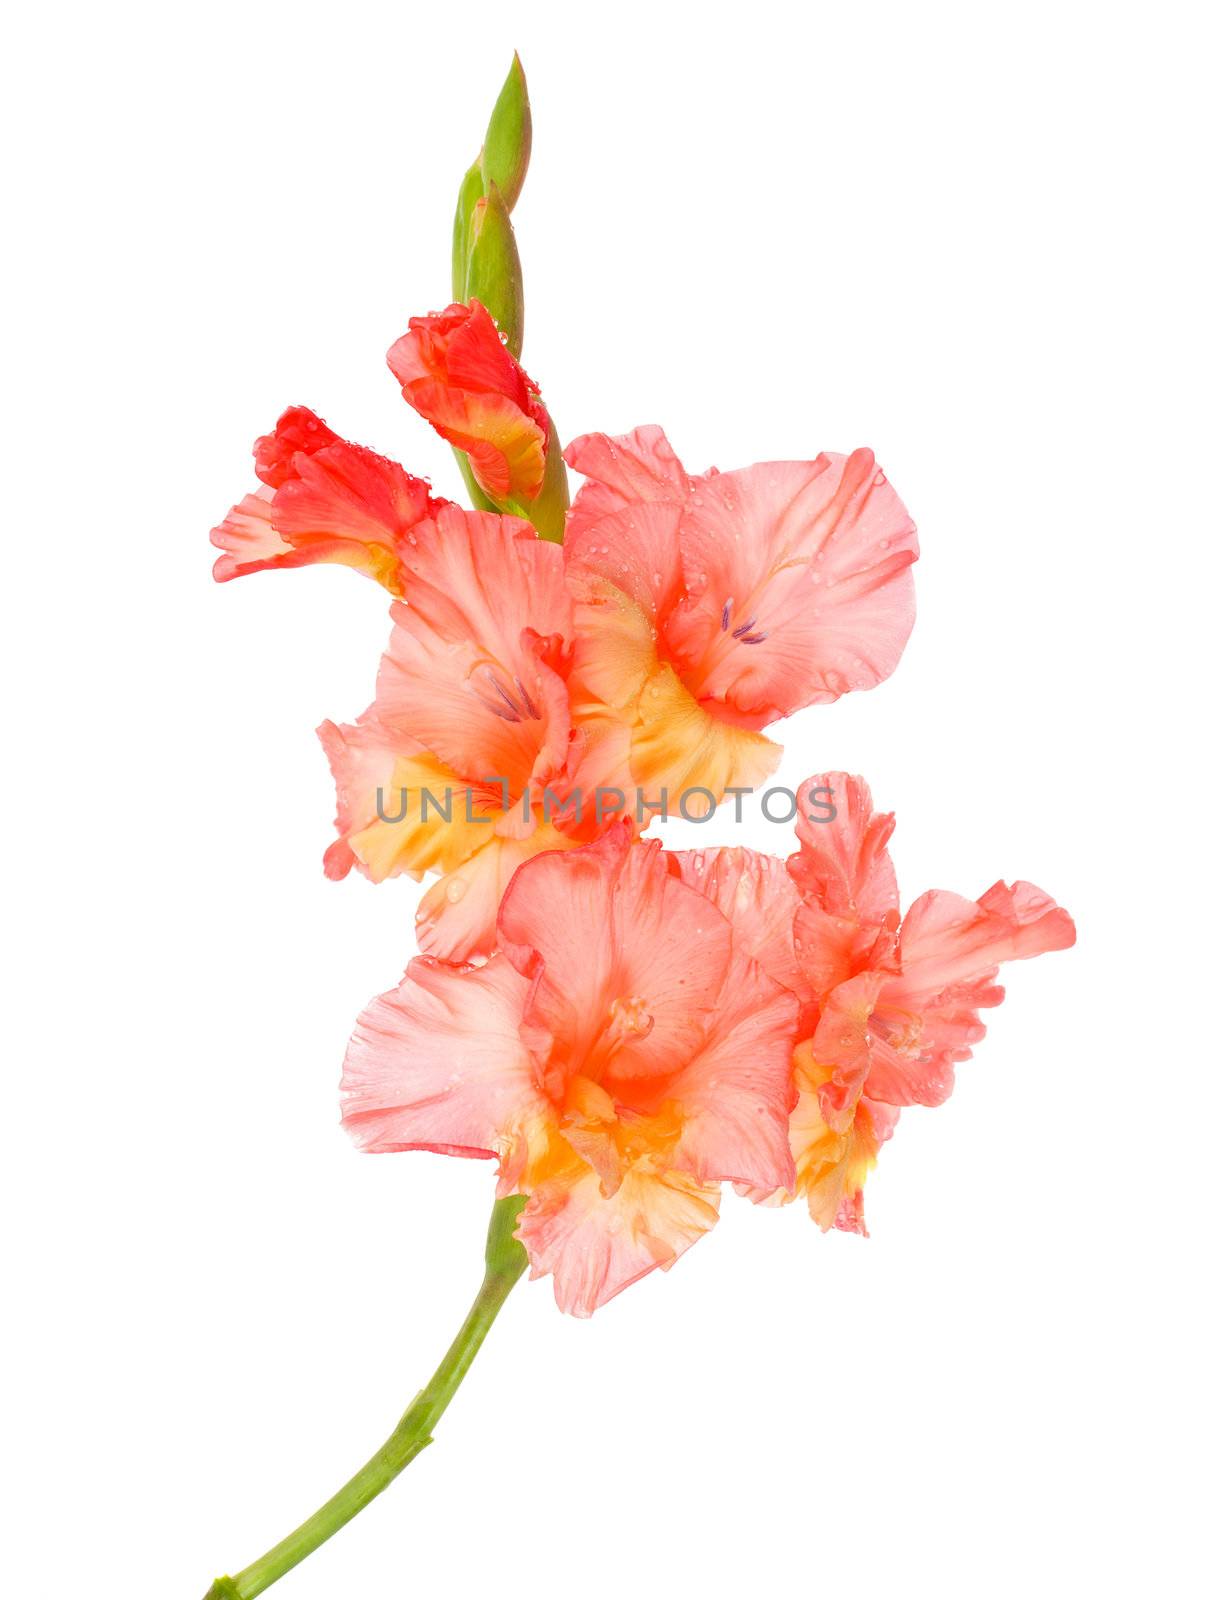 wet gladiolus flower by Alekcey